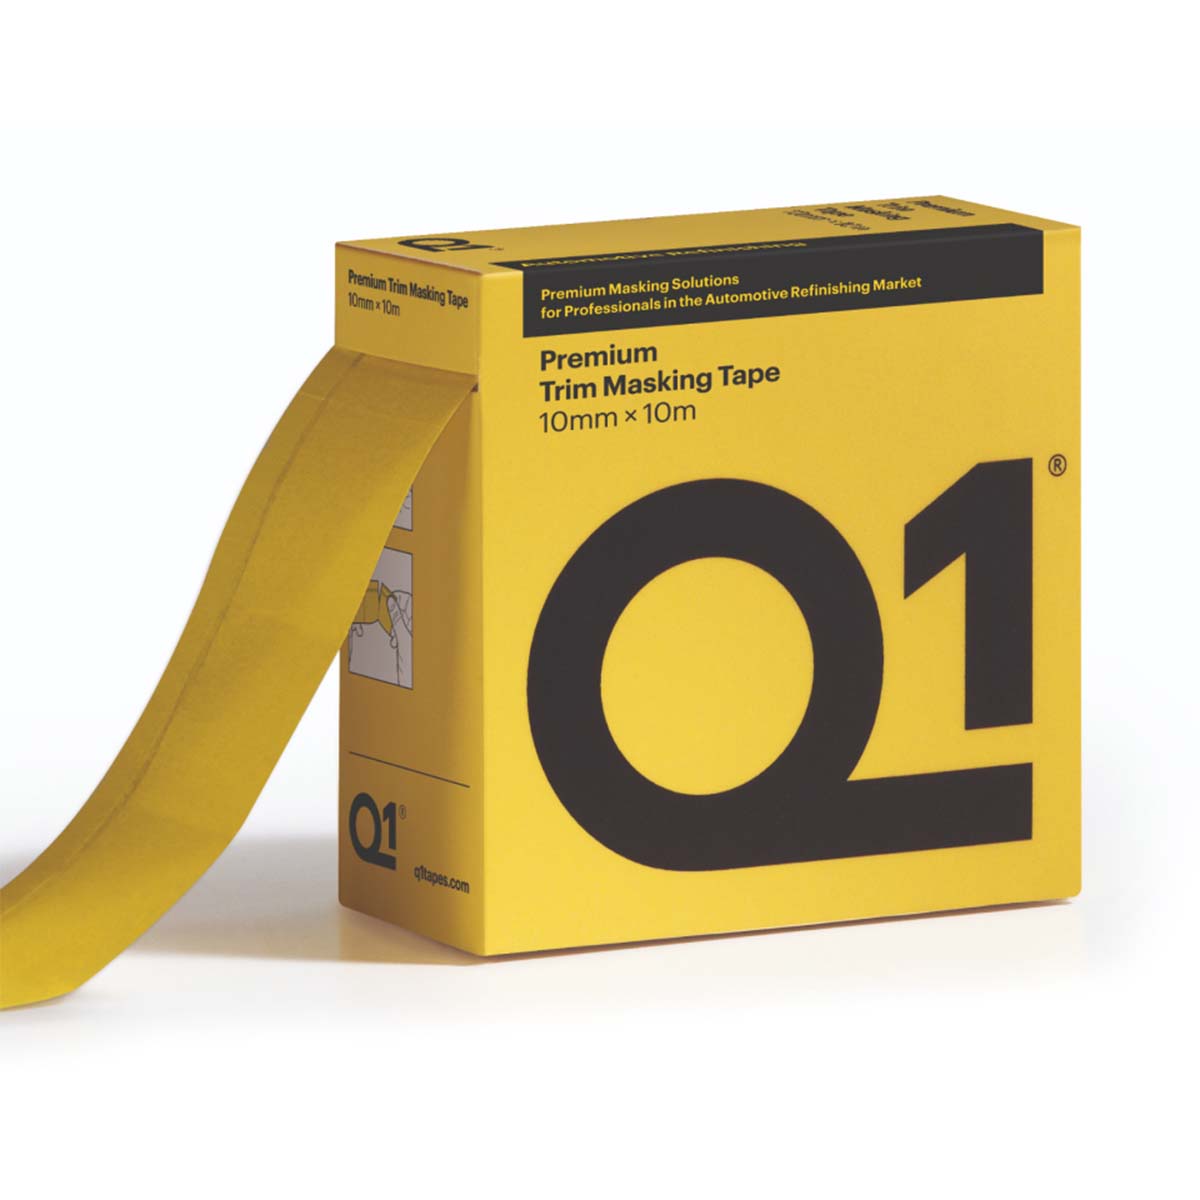 Q1® Premium Trim Masking Tape